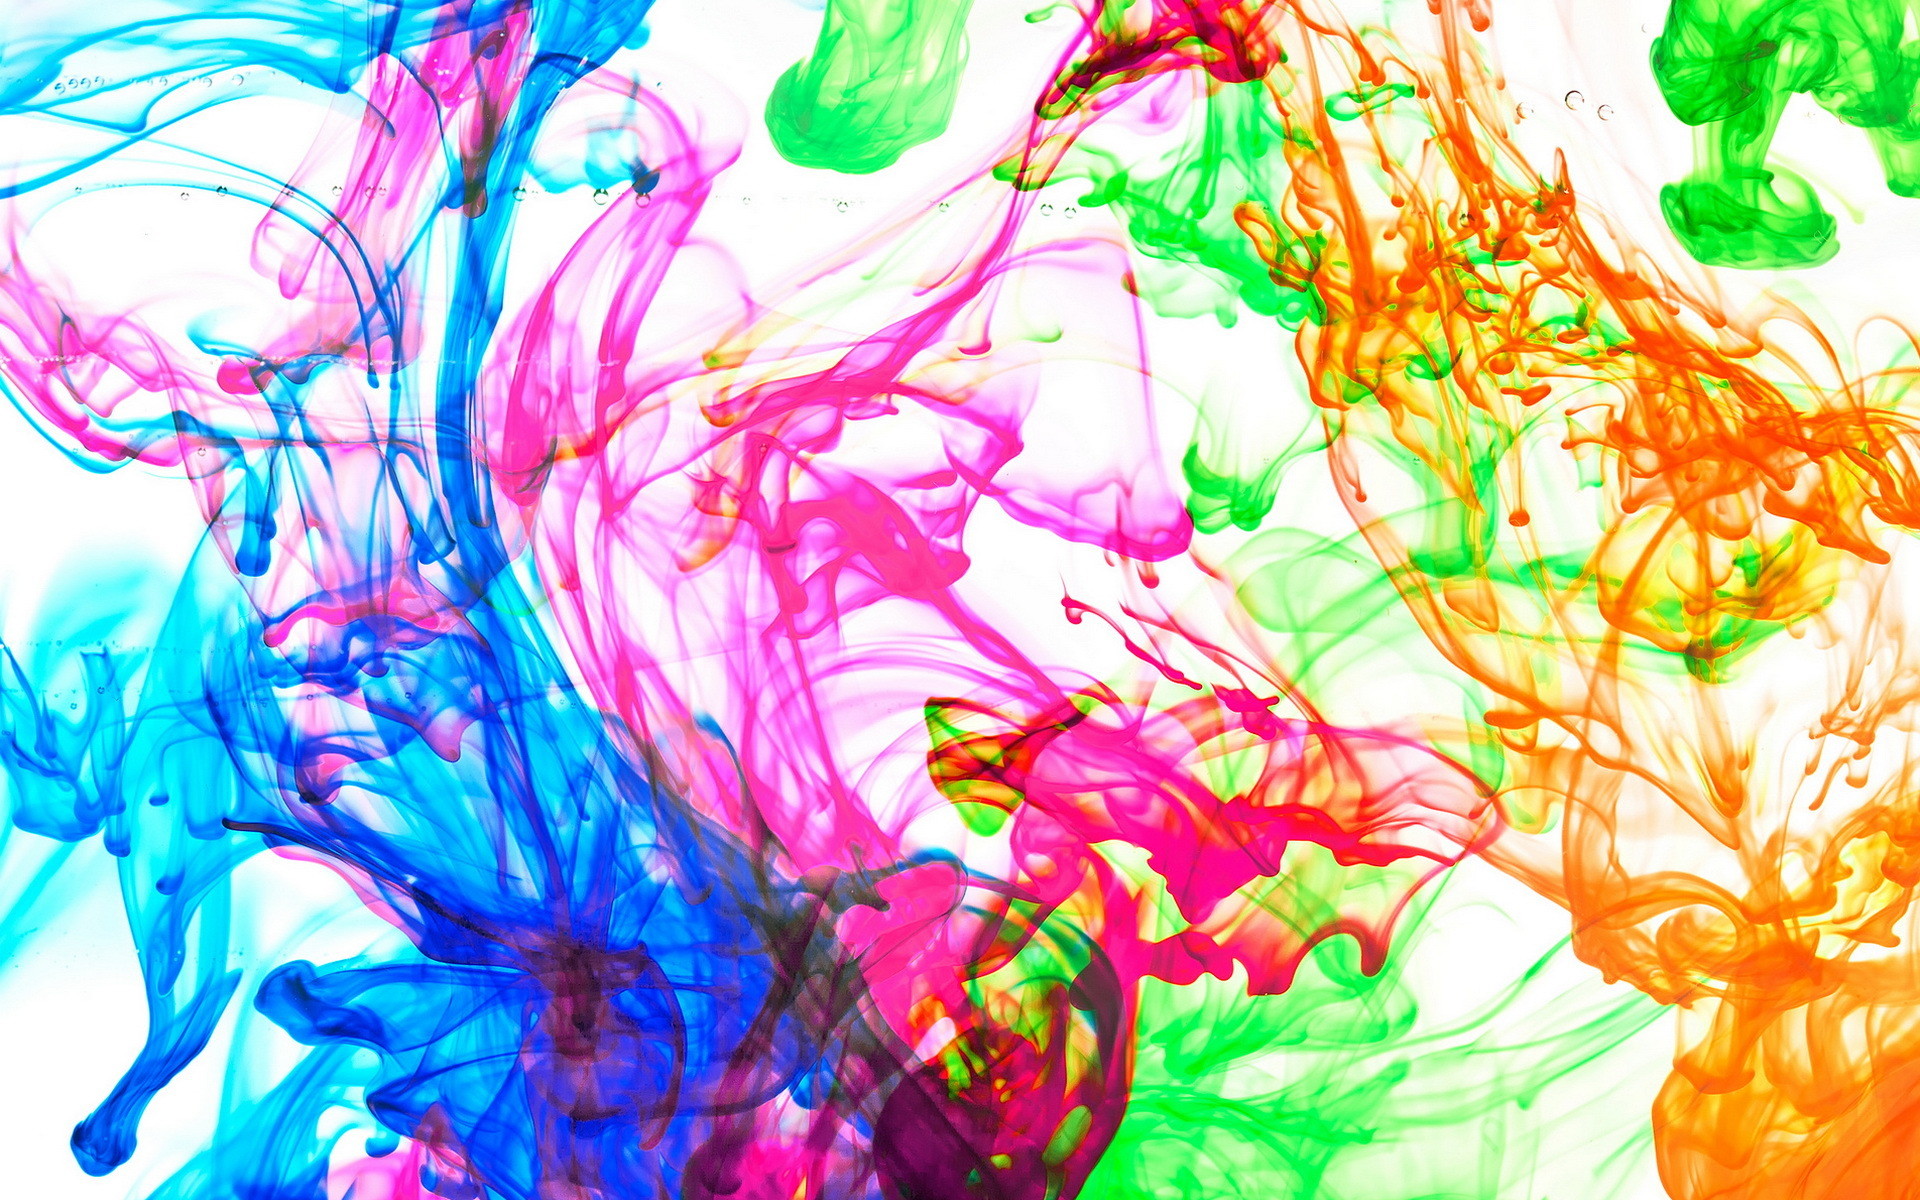 vernice splash wallpaper,colorfulness,disegno grafico,arte,arte psichedelica,design